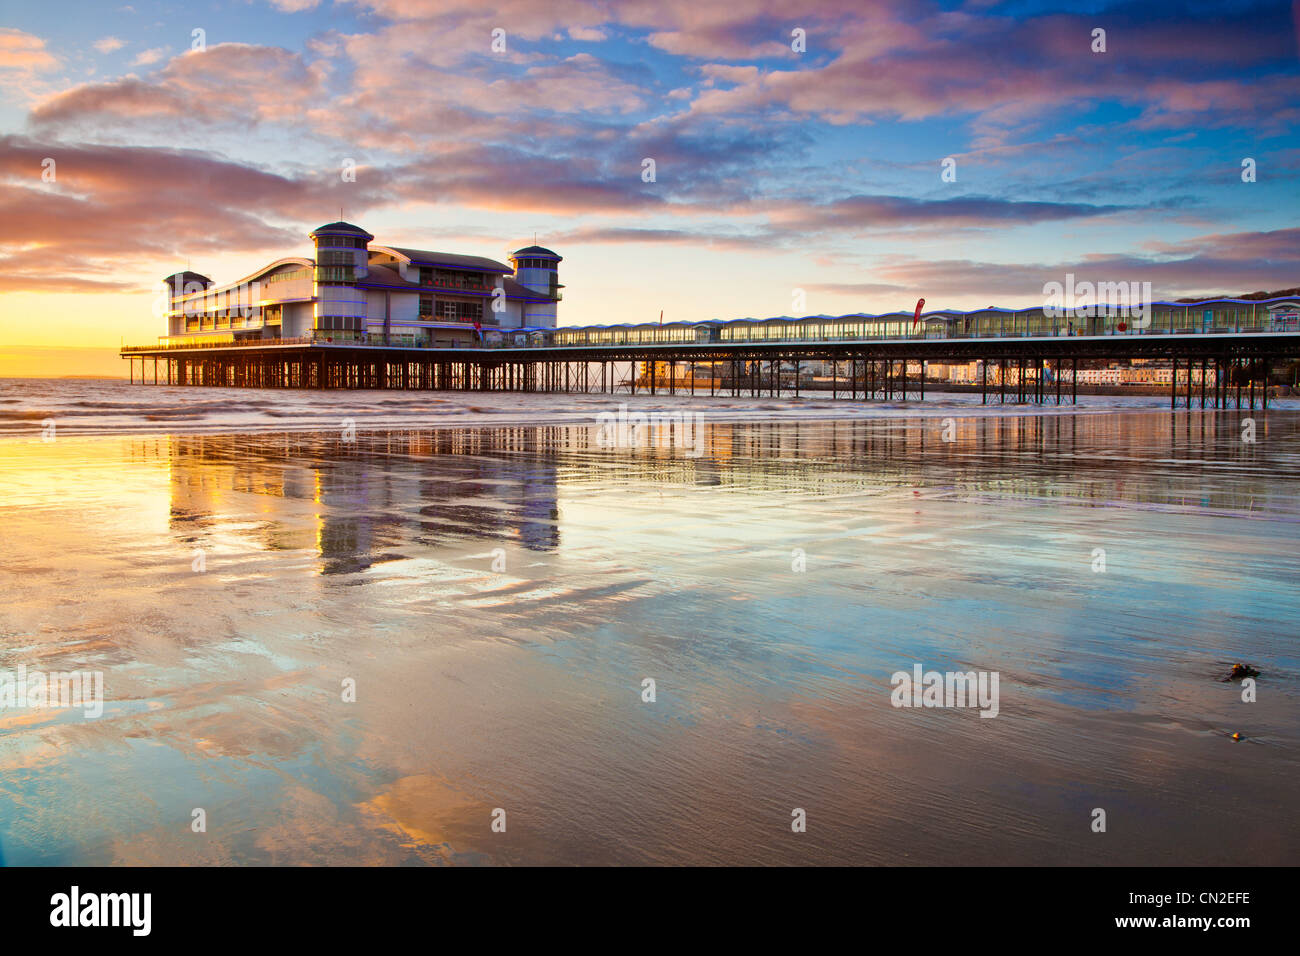 Sonnenuntergang über dem Grand Pier bei Weston-Super-Mare, Somerset, England, UK spiegelt sich in dem nassen Sand des Strandes bei Flut. Stockfoto